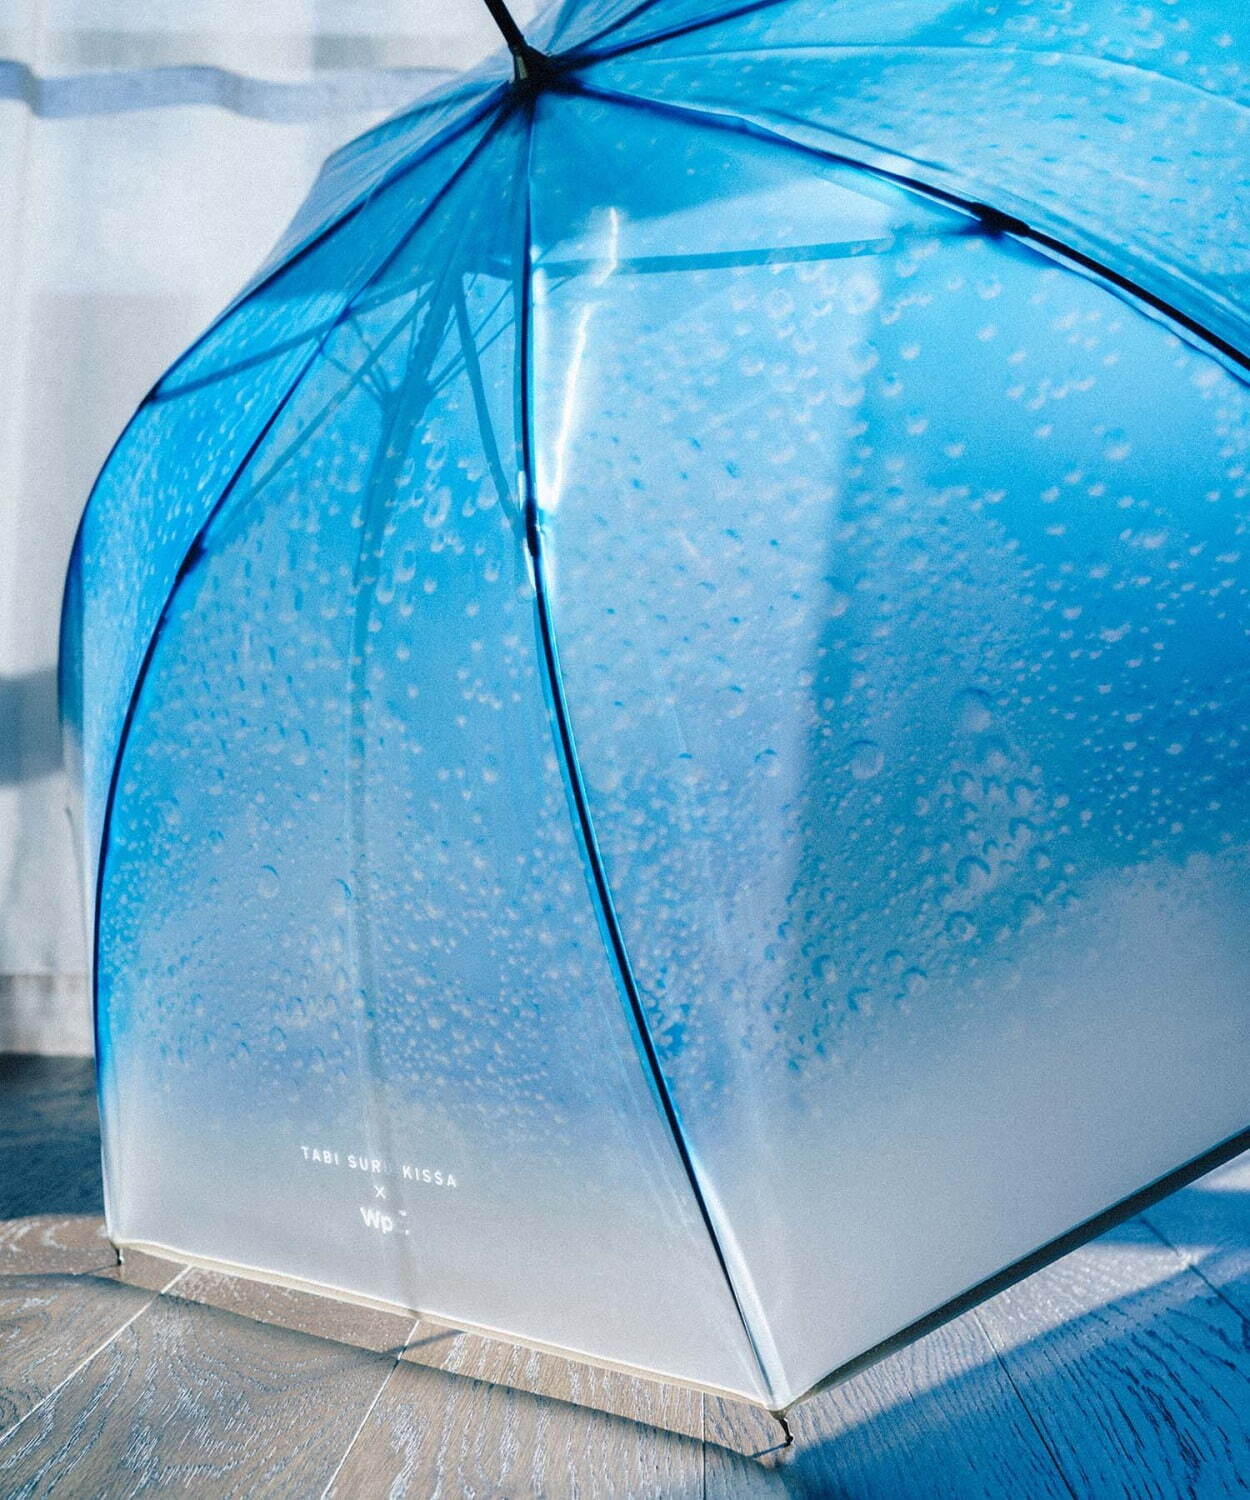 Wpc クリームソーダアンブレラ シュワシュワ泡の弾けるビニール傘 チェリーのチャーム付き ファッションプレス